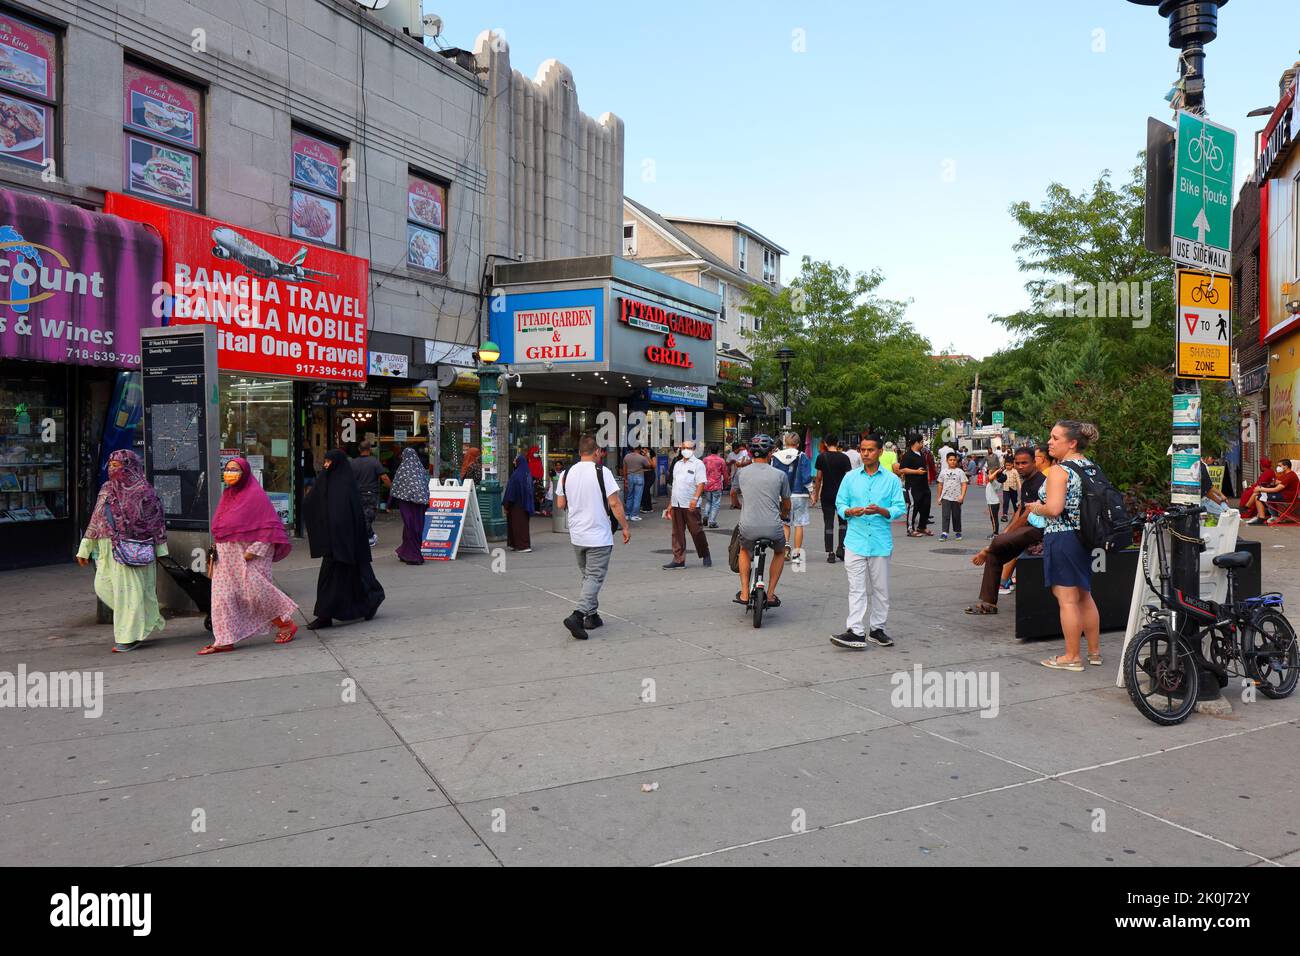 Personas, compradores en Diversity Plaza, una plaza peatonal ubicada en 37th Rd entre 73rd y 74th STS, Jackson Heights, Queens, Nueva York, 30 de agosto, 20 Foto de stock